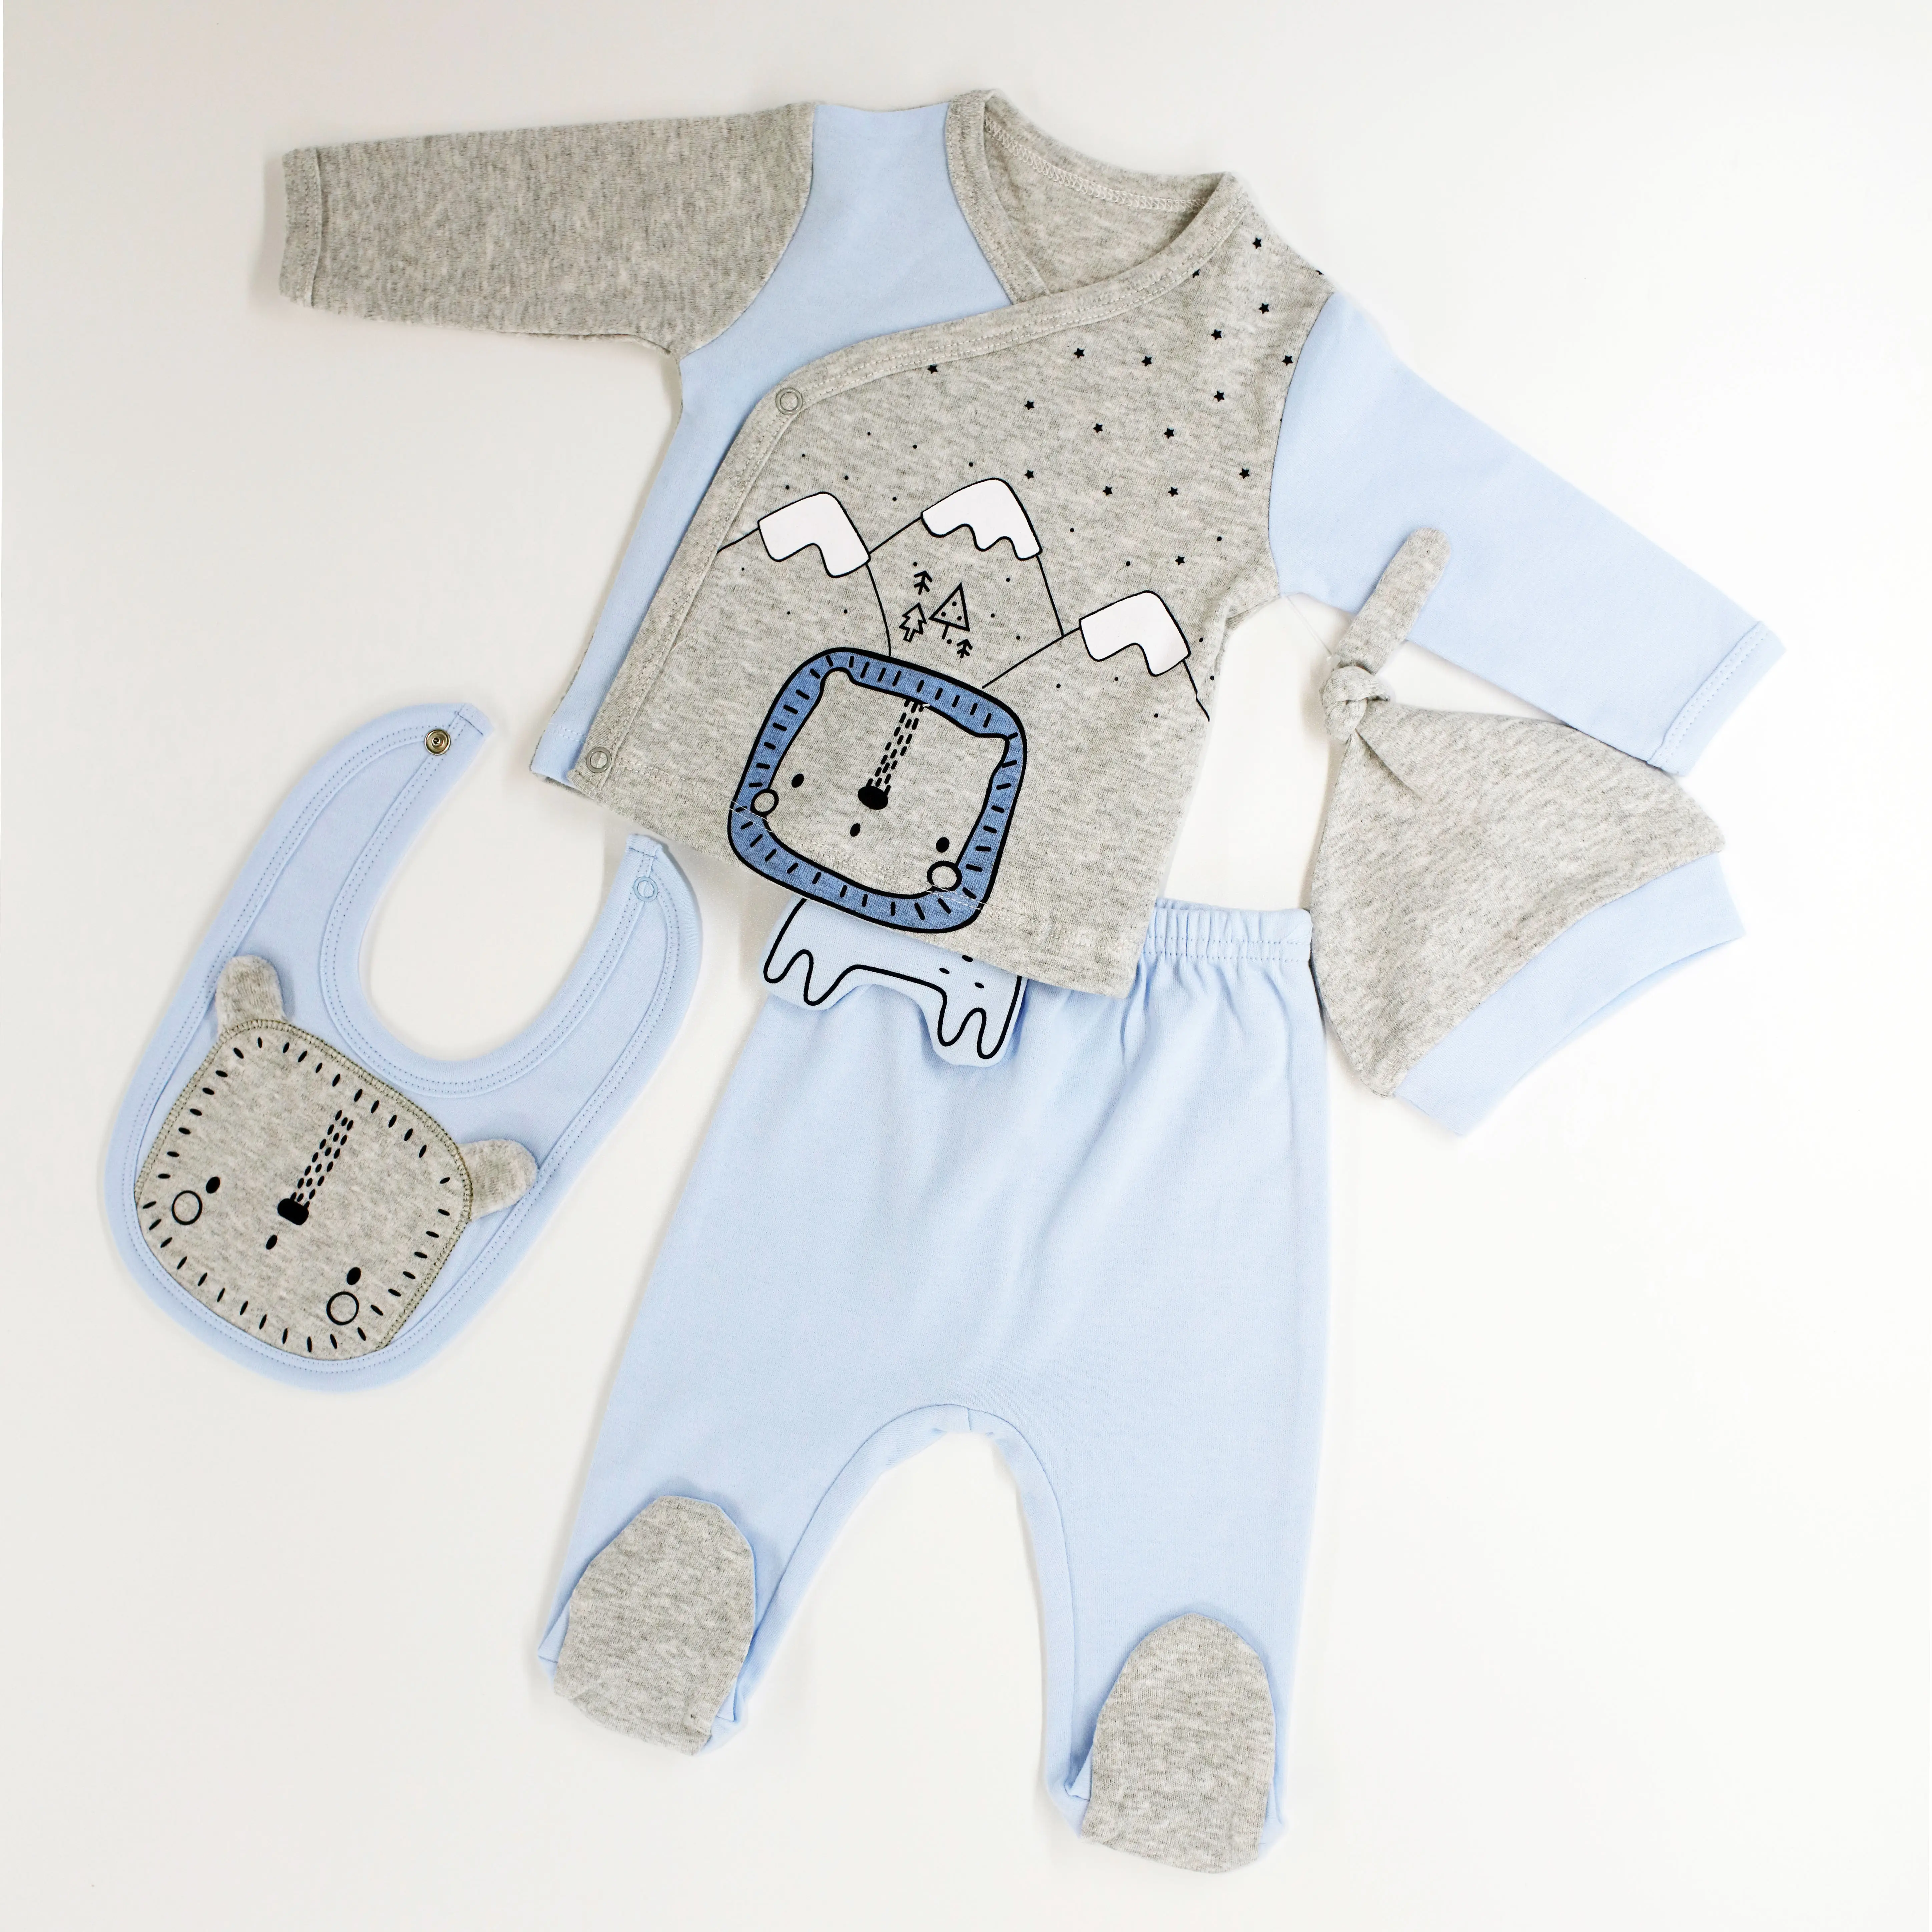 Buena calidad lindo interlock 100% algodón toda la temporada ropa de bebé fabricación 4 piezas conjunto de ropa de bebé